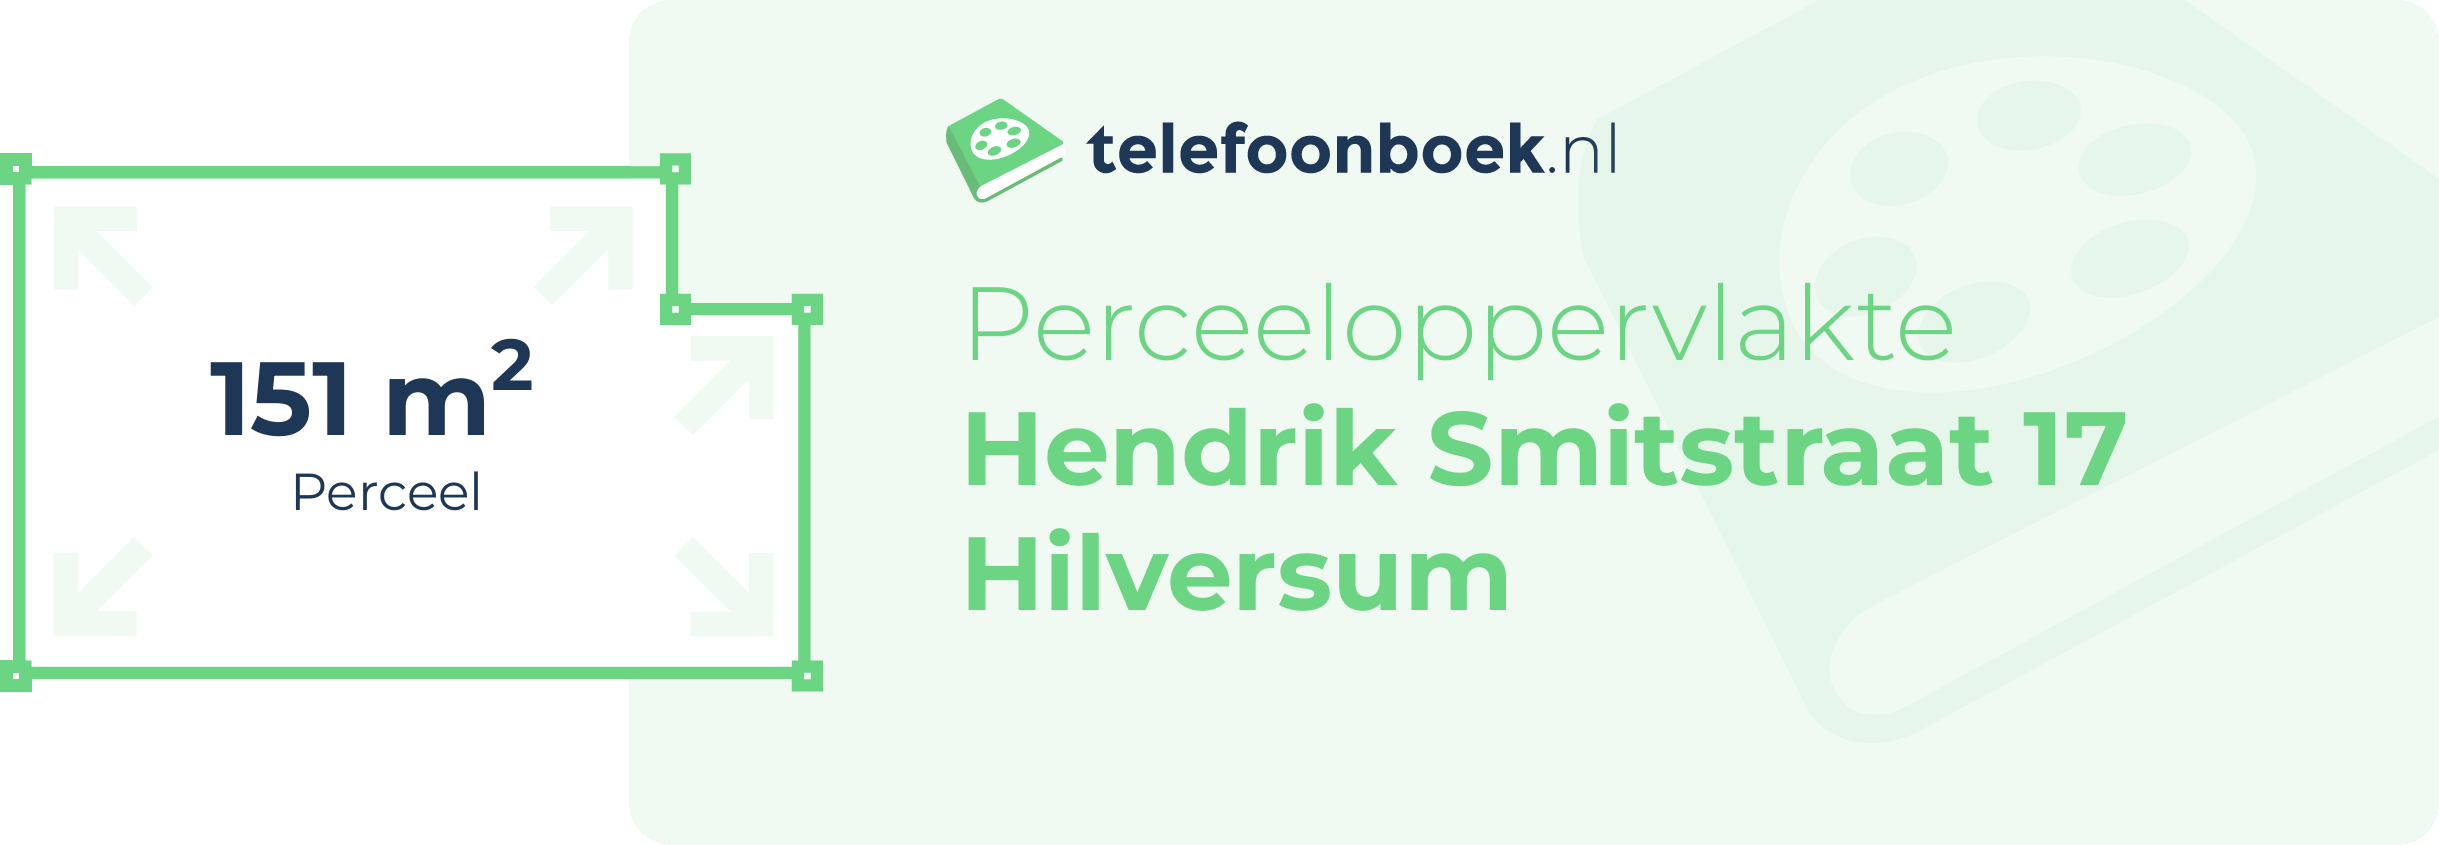 Perceeloppervlakte Hendrik Smitstraat 17 Hilversum